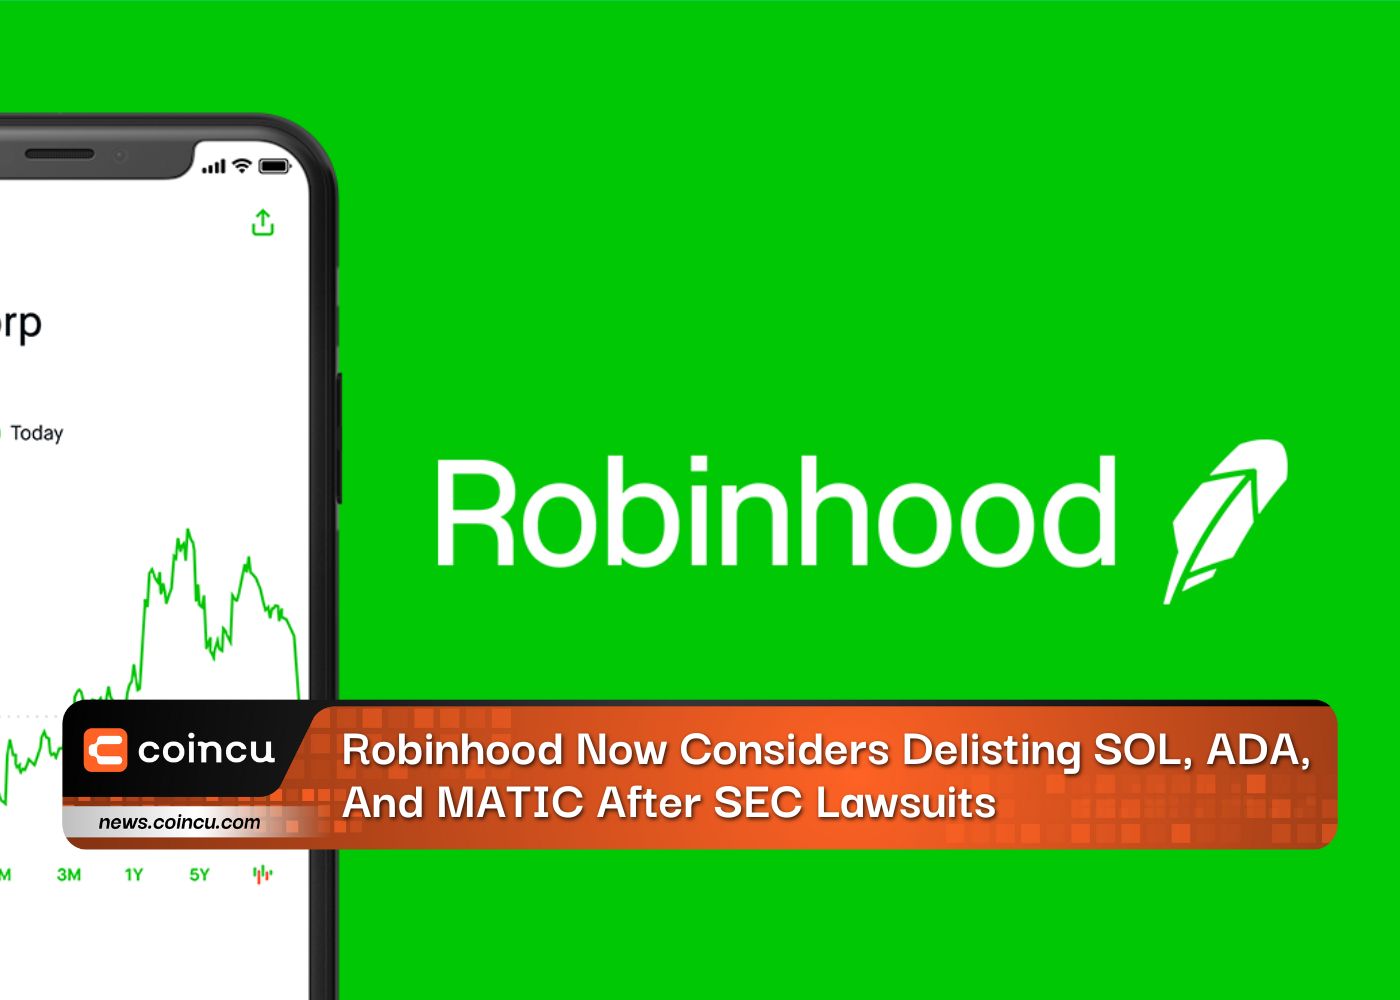 Robinhood ahora considera eliminar SOL, ADA y MATIC después de las demandas de la SEC: informe